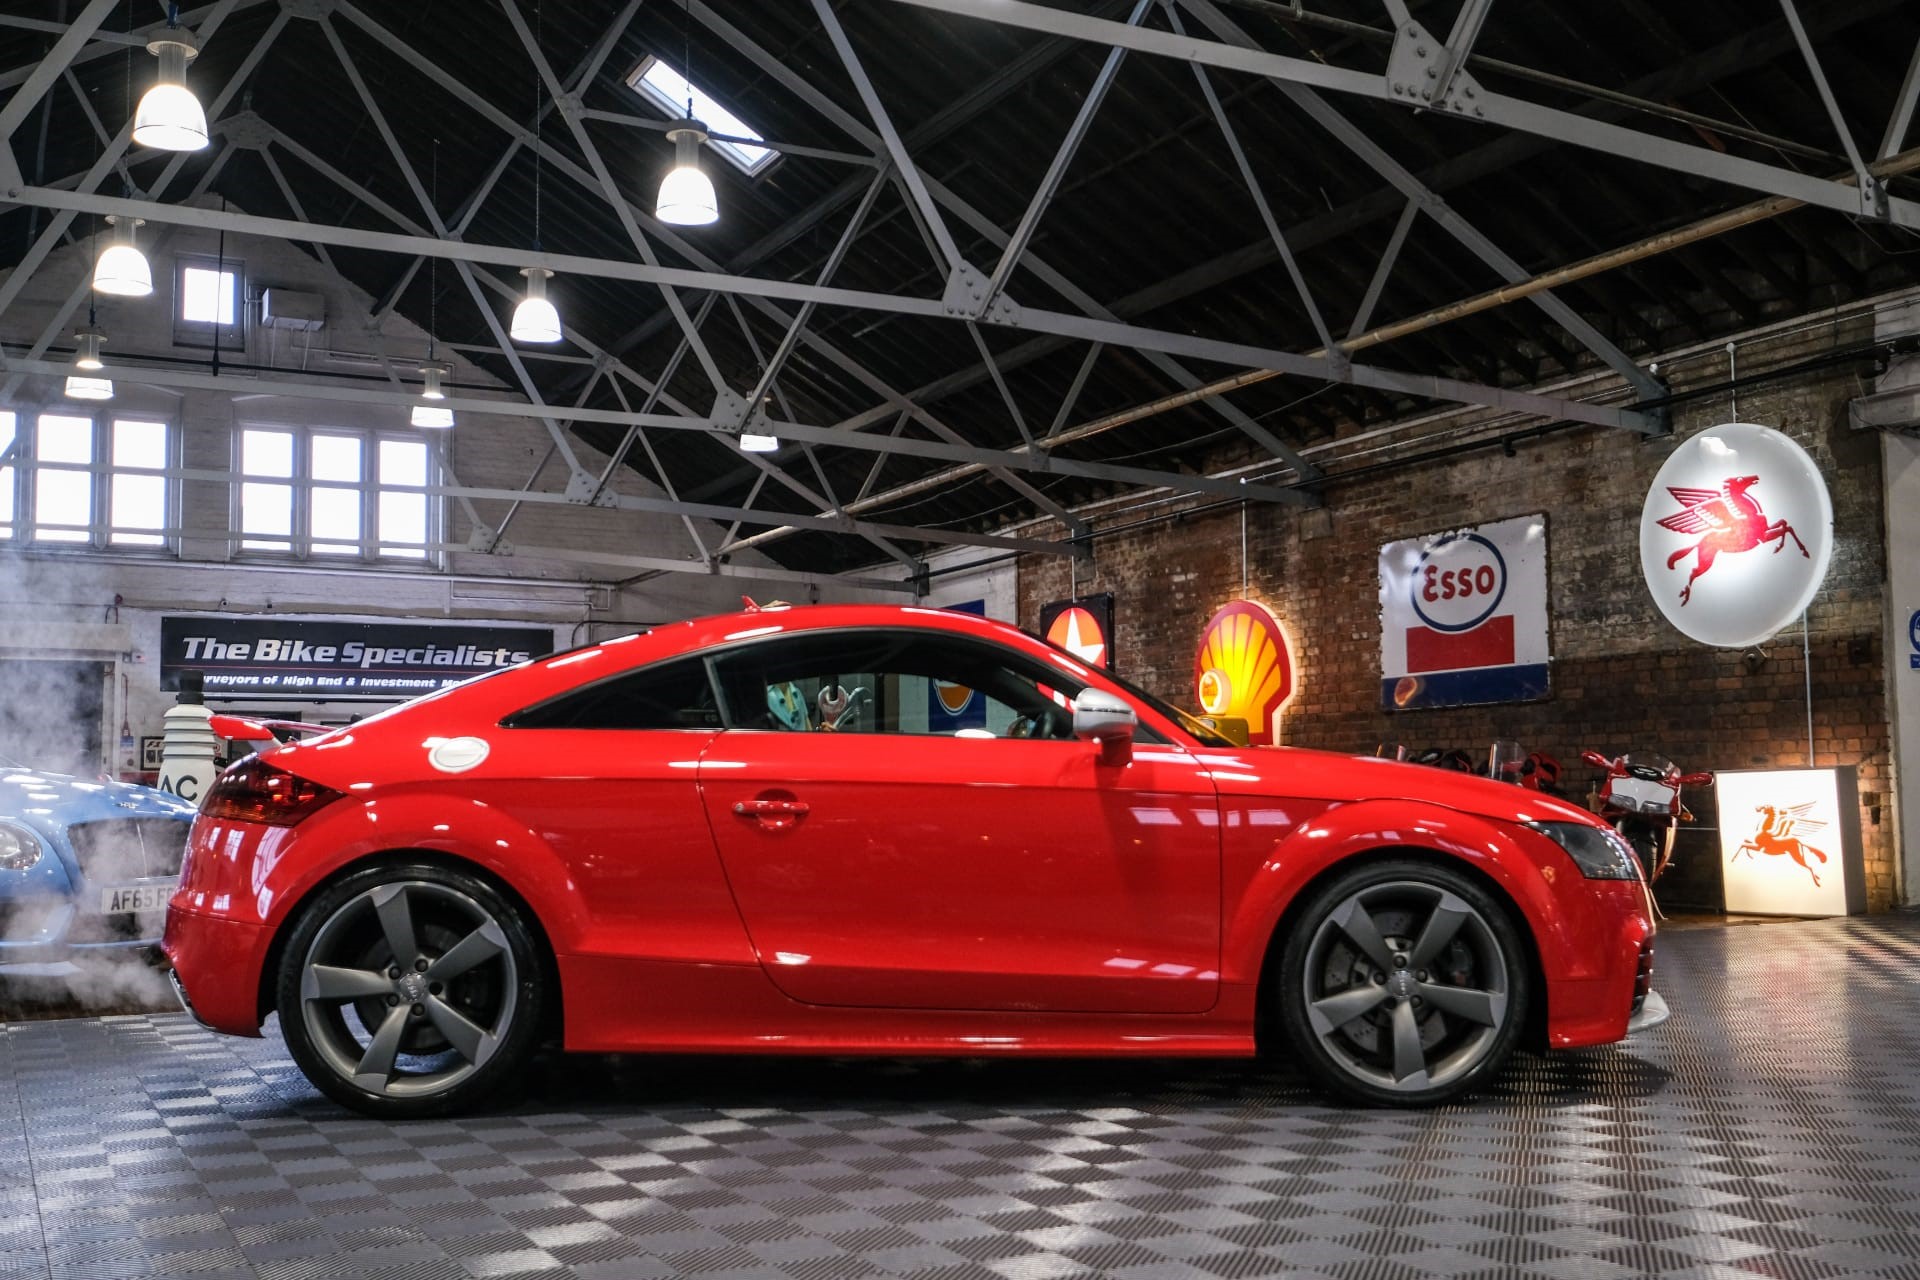 Audi TT MK2 (8j) : r/car